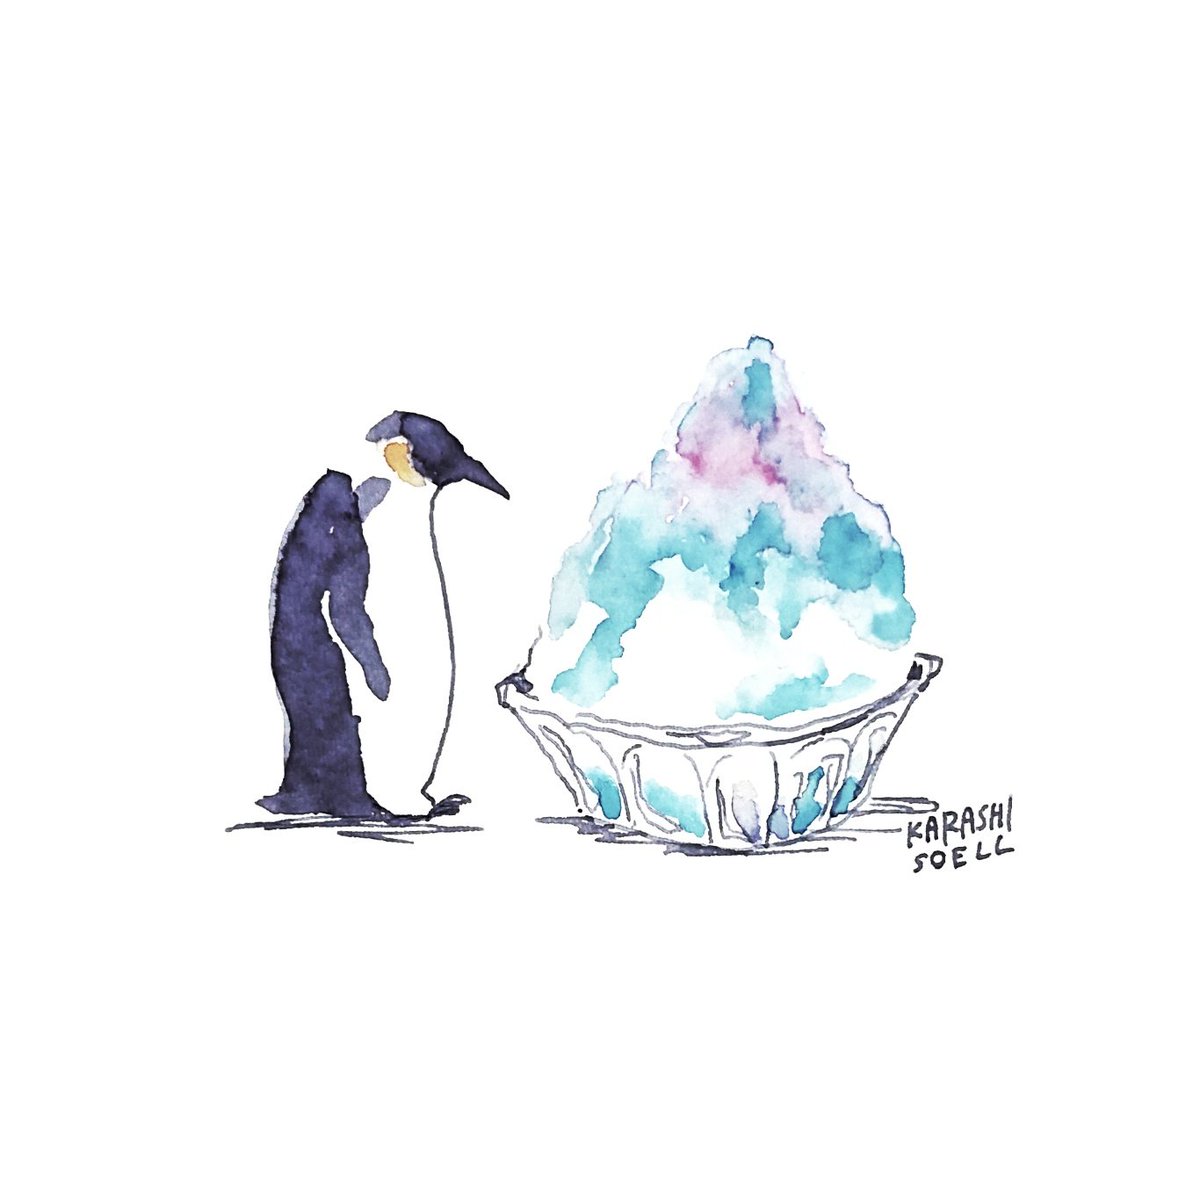 Tuwita カラシソエル イラストレーター A Tuwita 今日のイラスト ペンギン かき氷と出会う 今日のカラシイラスト T Co Jzb2lyrt5t